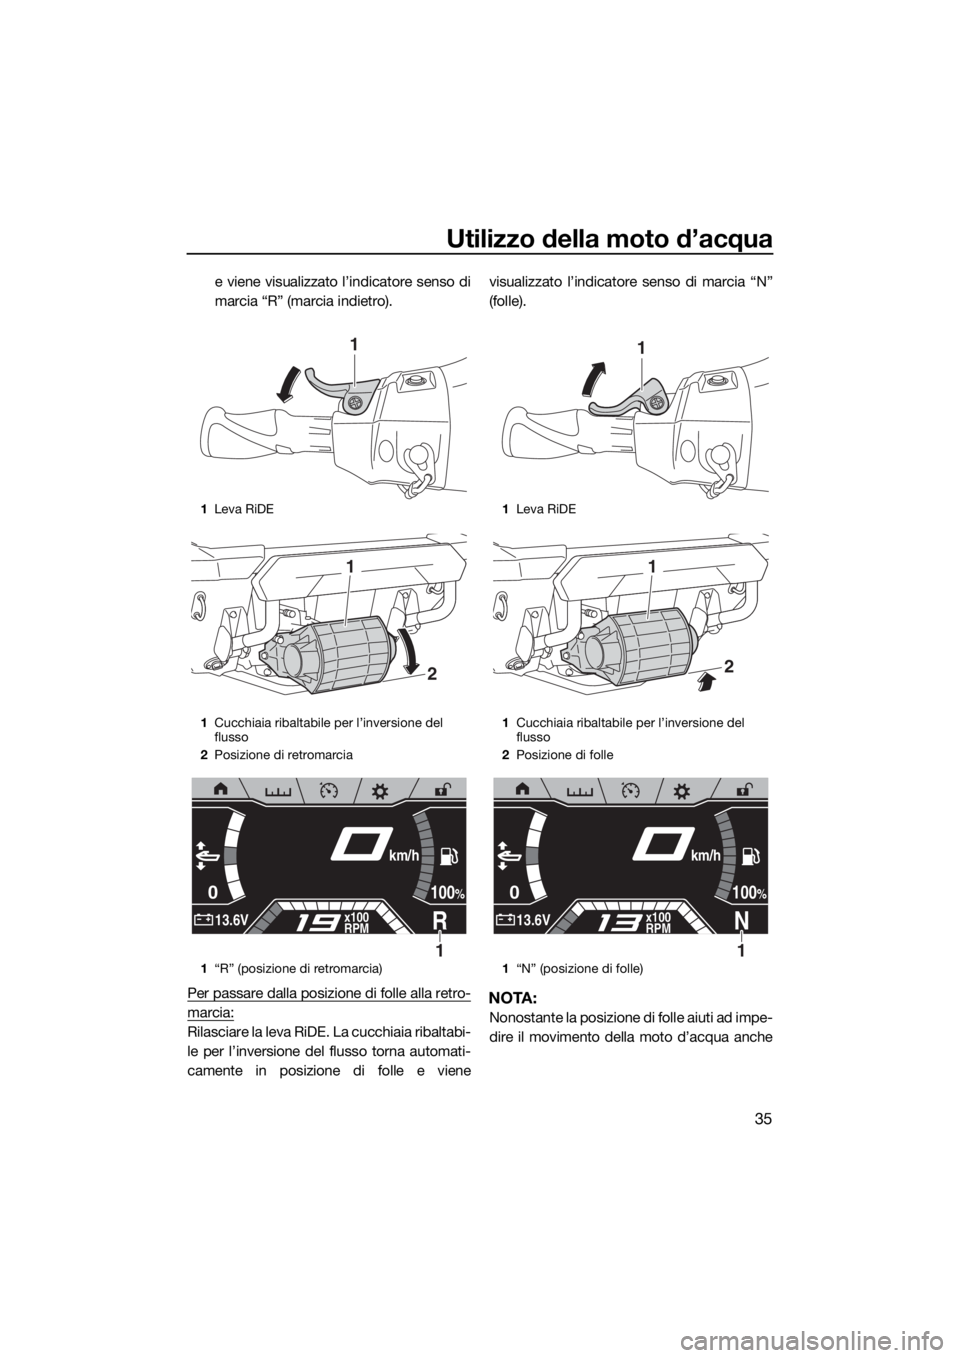 YAMAHA FX SVHO 2020  Manuale duso (in Italian) Utilizzo della moto d’acqua
35
e viene visualizzato l’indicatore senso di
marcia “R” (marcia indietro).
Per passare dalla posizione di folle alla retro-
marcia:
Rilasciare la leva RiDE. La cuc